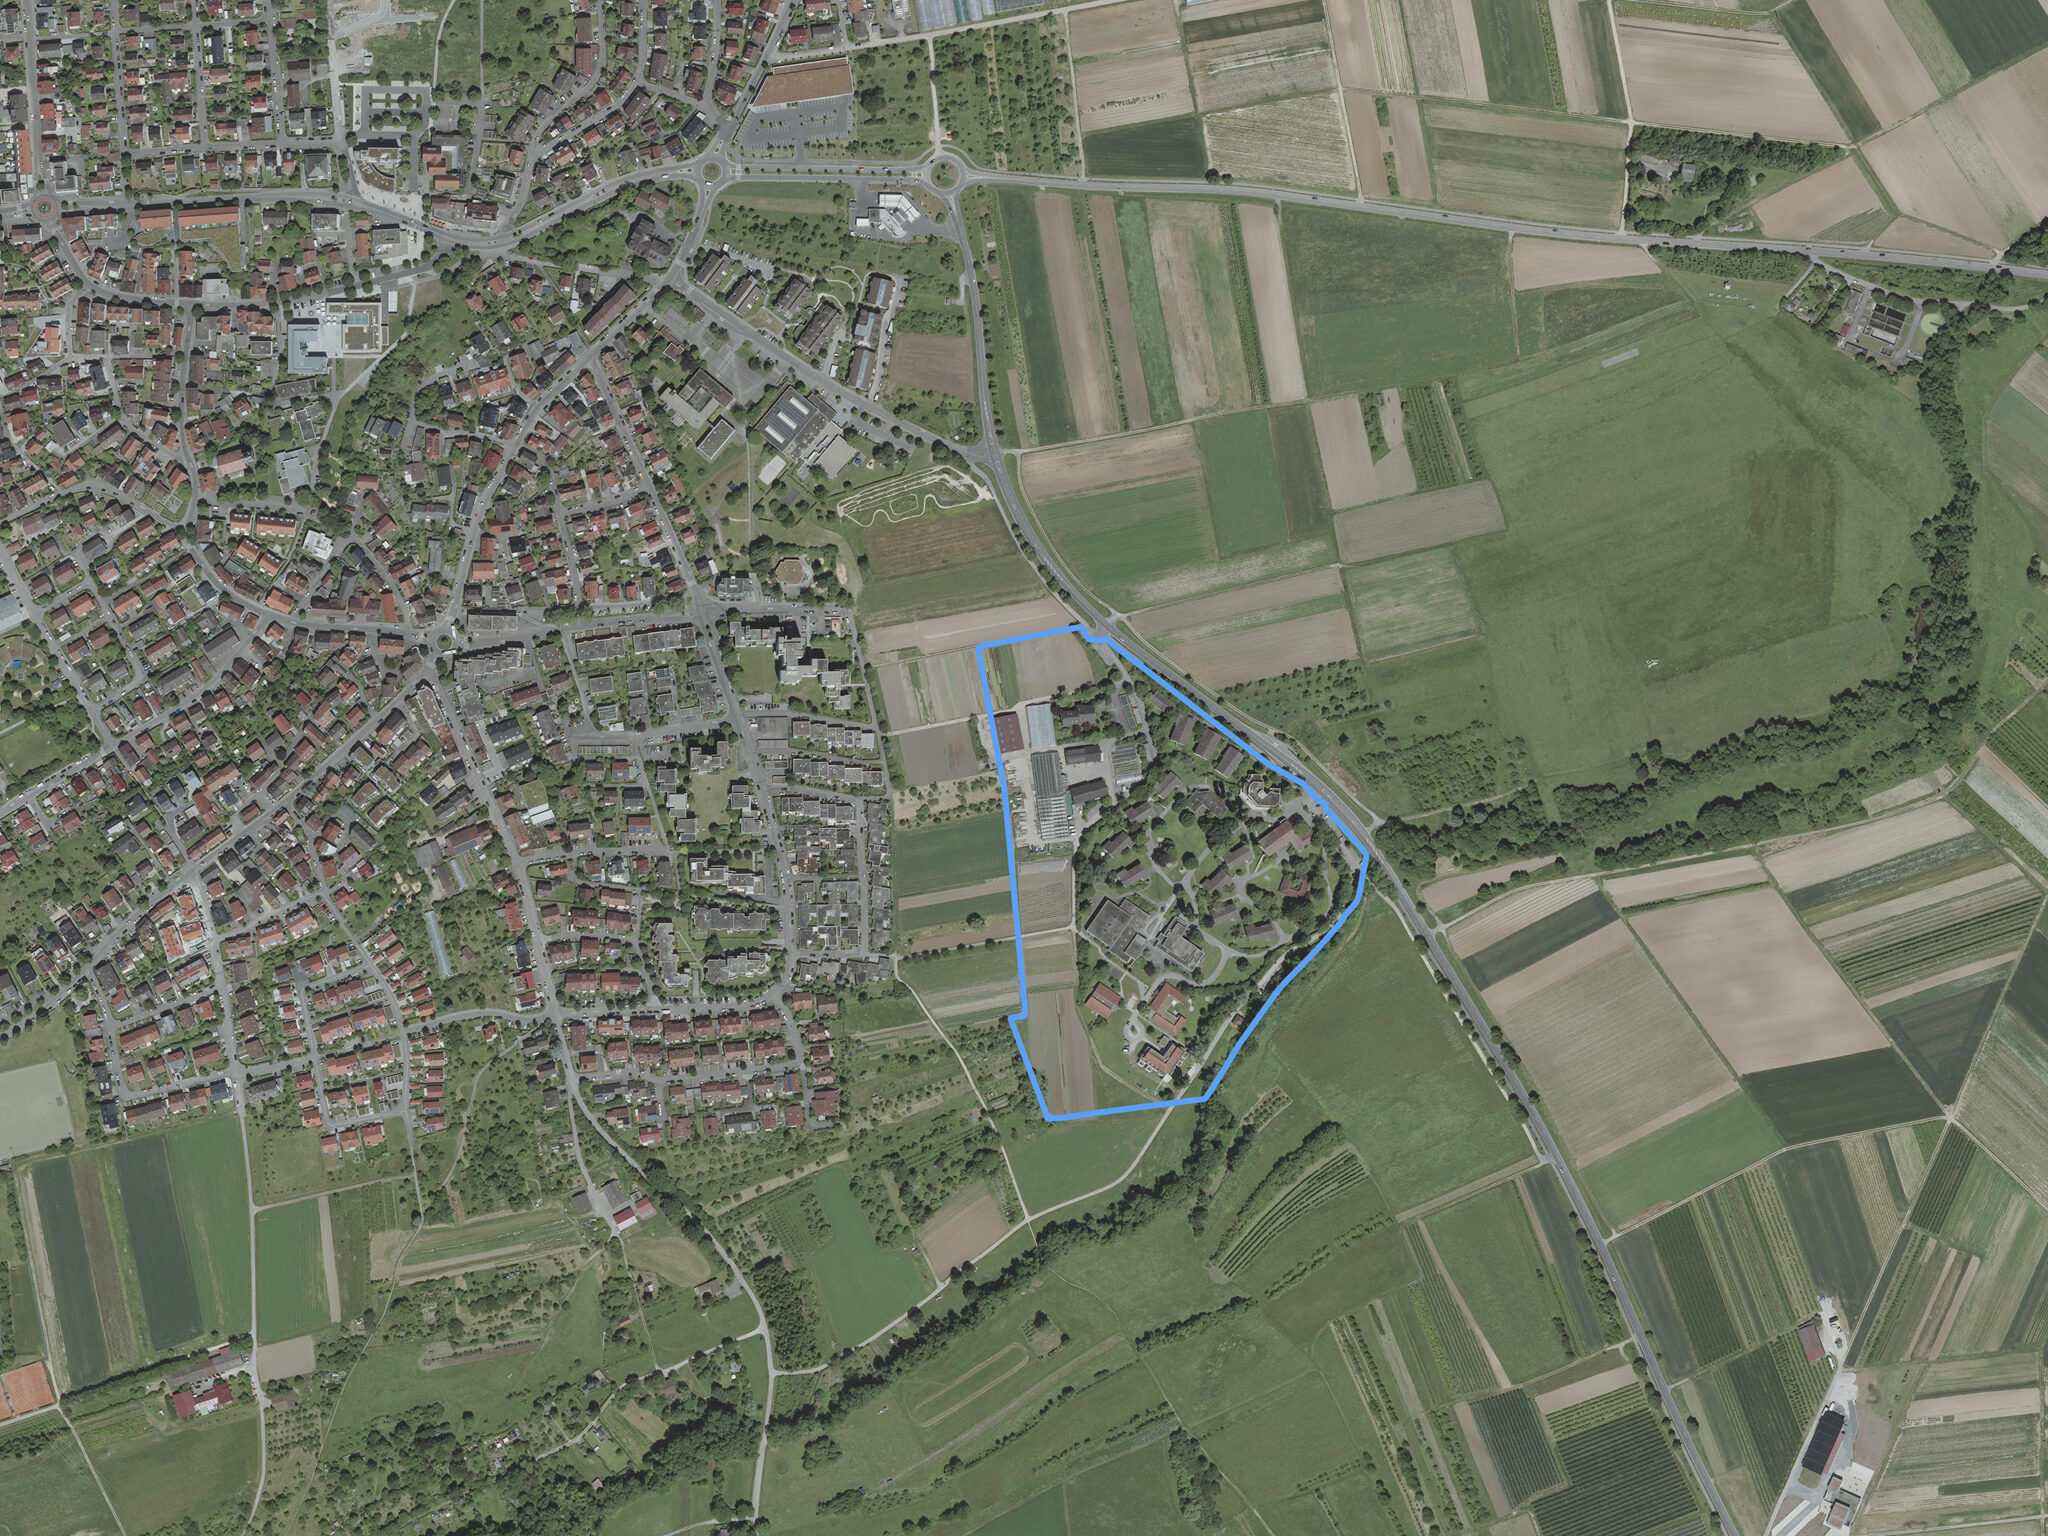 Luftbild des Projektgeländes. Bild: Geobasisdaten LGL, www.lgl-bw.de